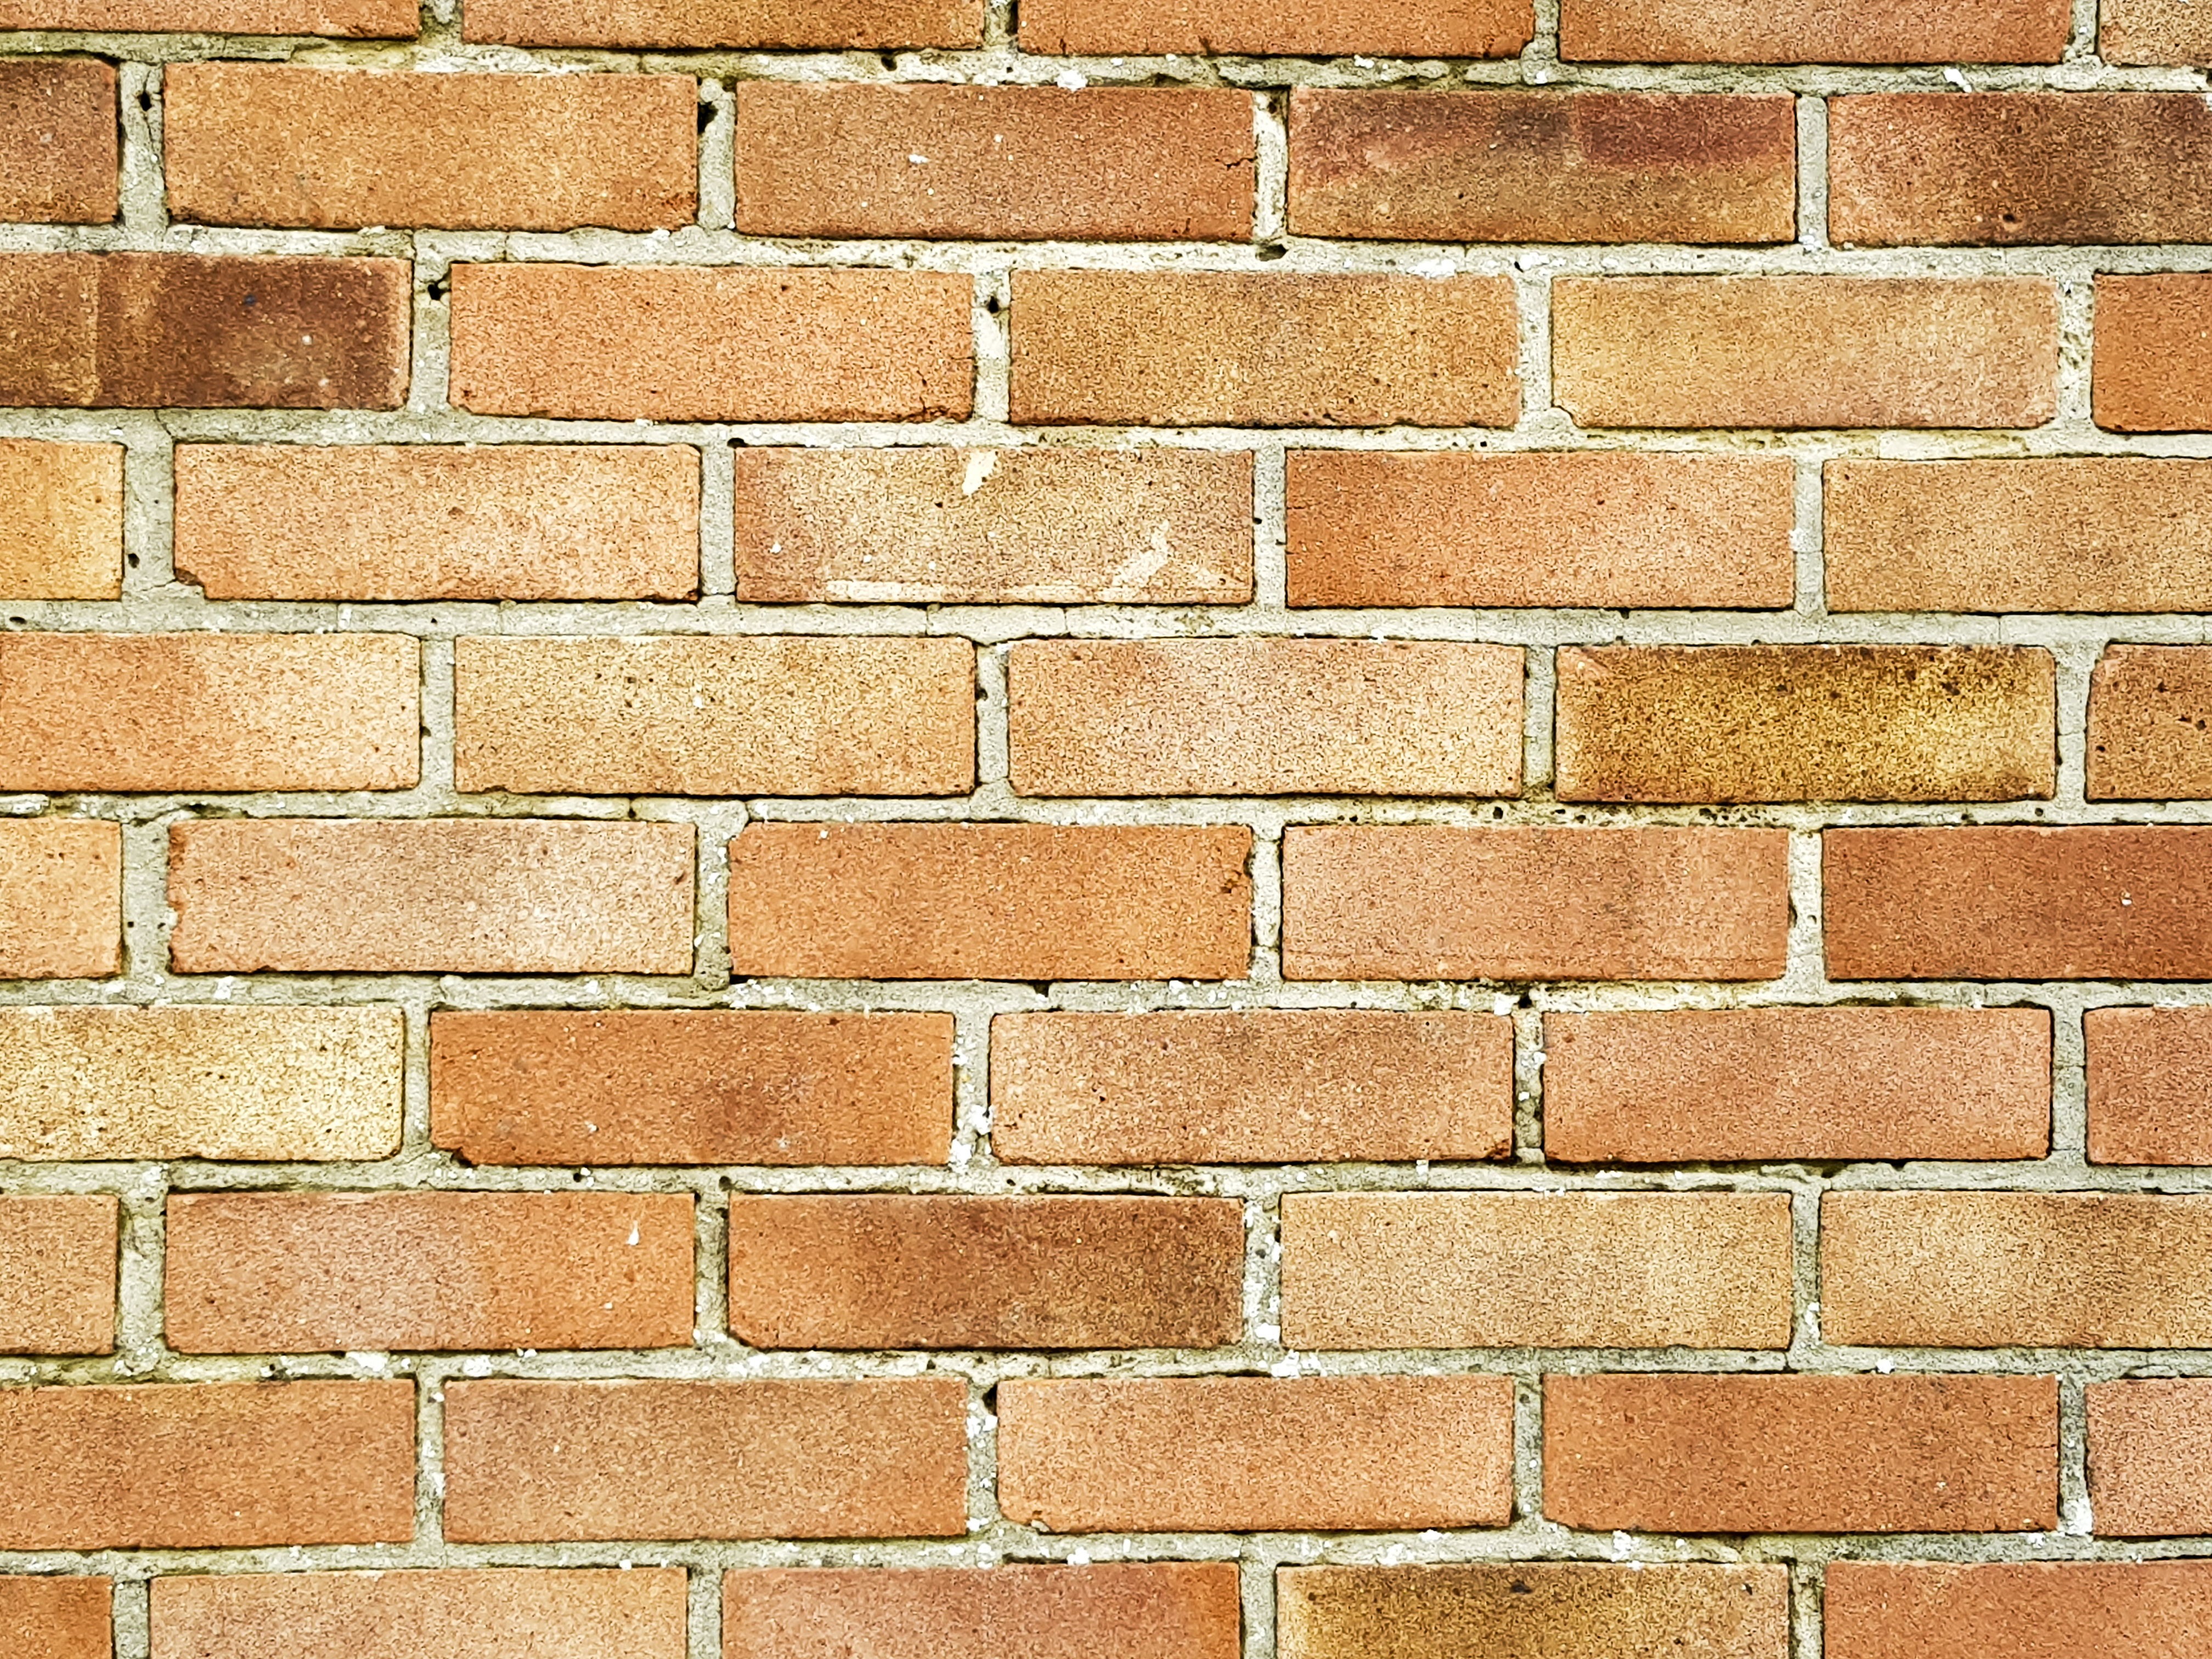 Choosing brickwork